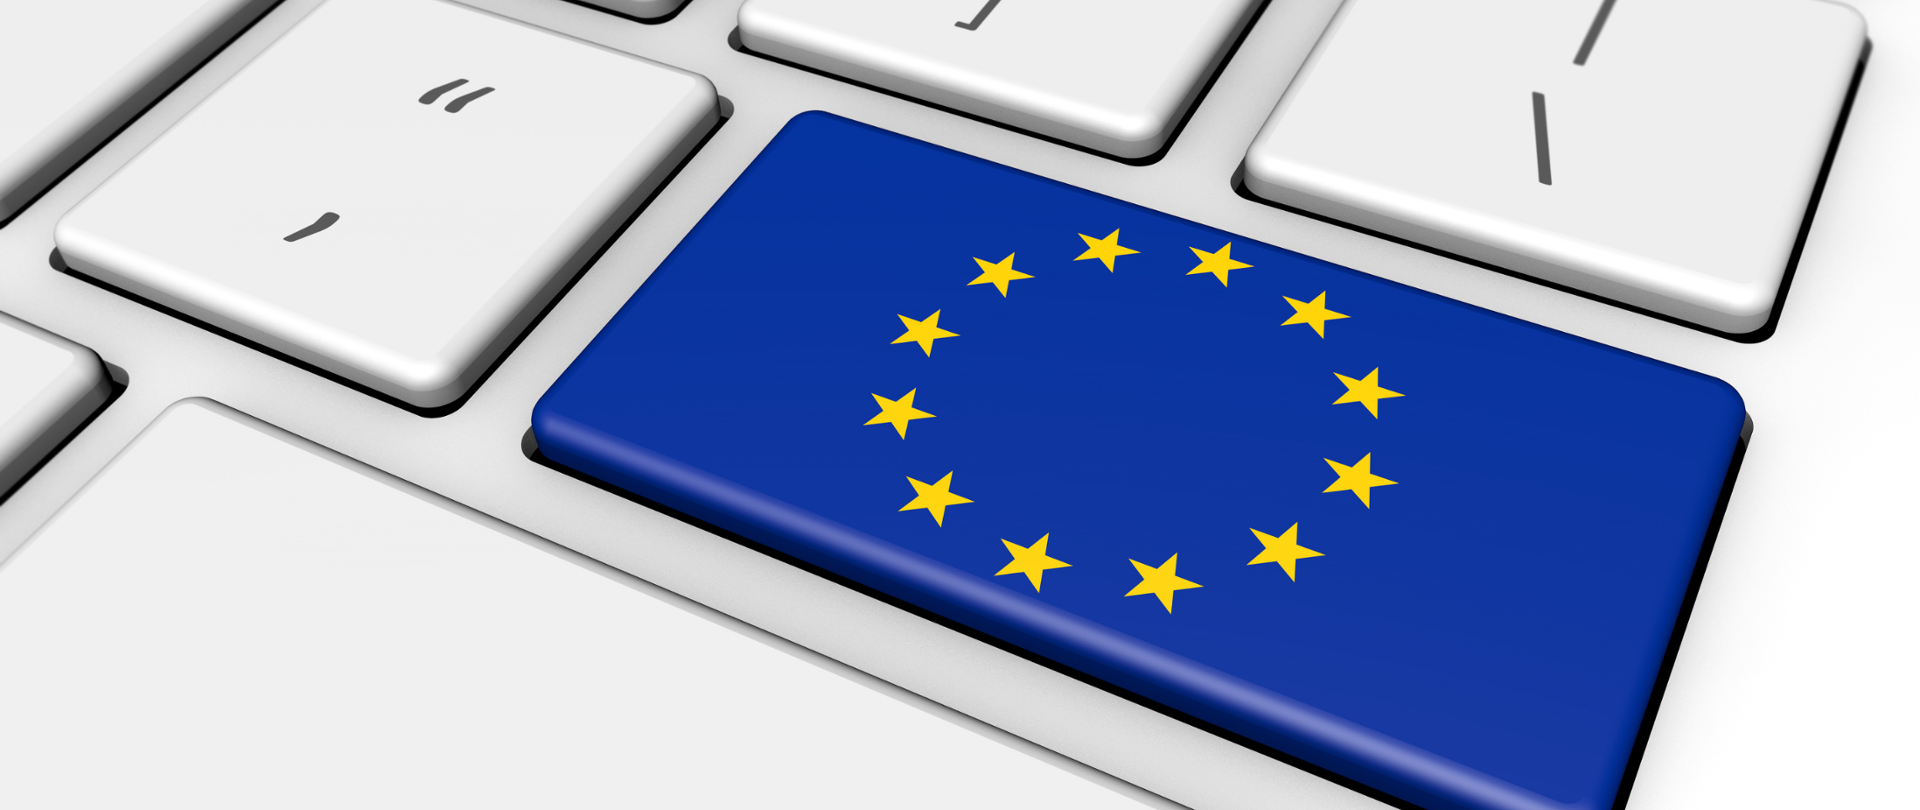 Biała klawiatura komputera, na jednym z przycisków flaga Unii Europejskiej